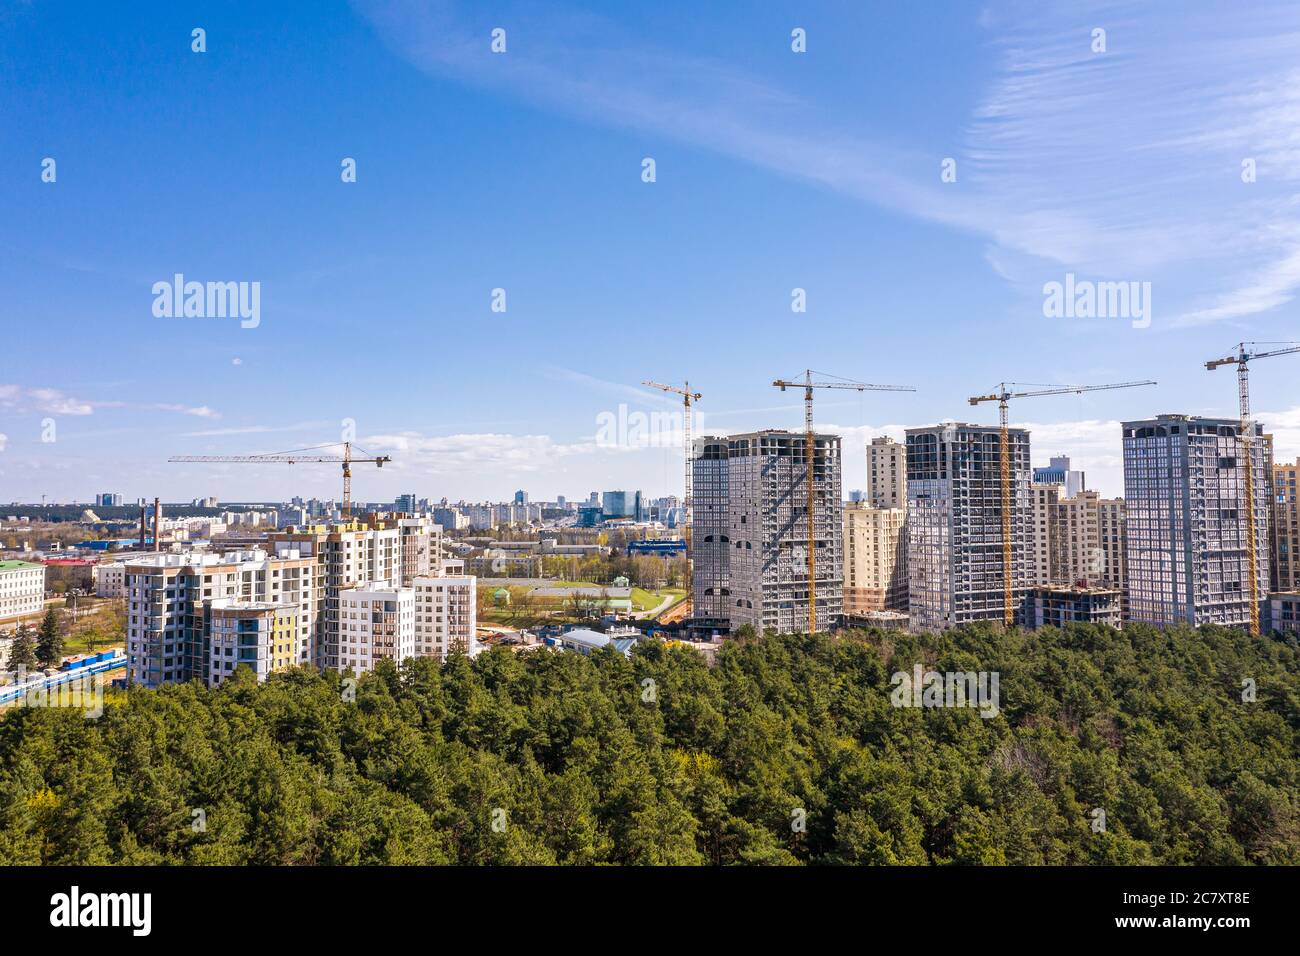 Hochhaus-Wohngebäude Baustelle mit Arbeitskränen gegen blauen Himmel. Luftaufnahme von fliegender Drohne Stockfoto